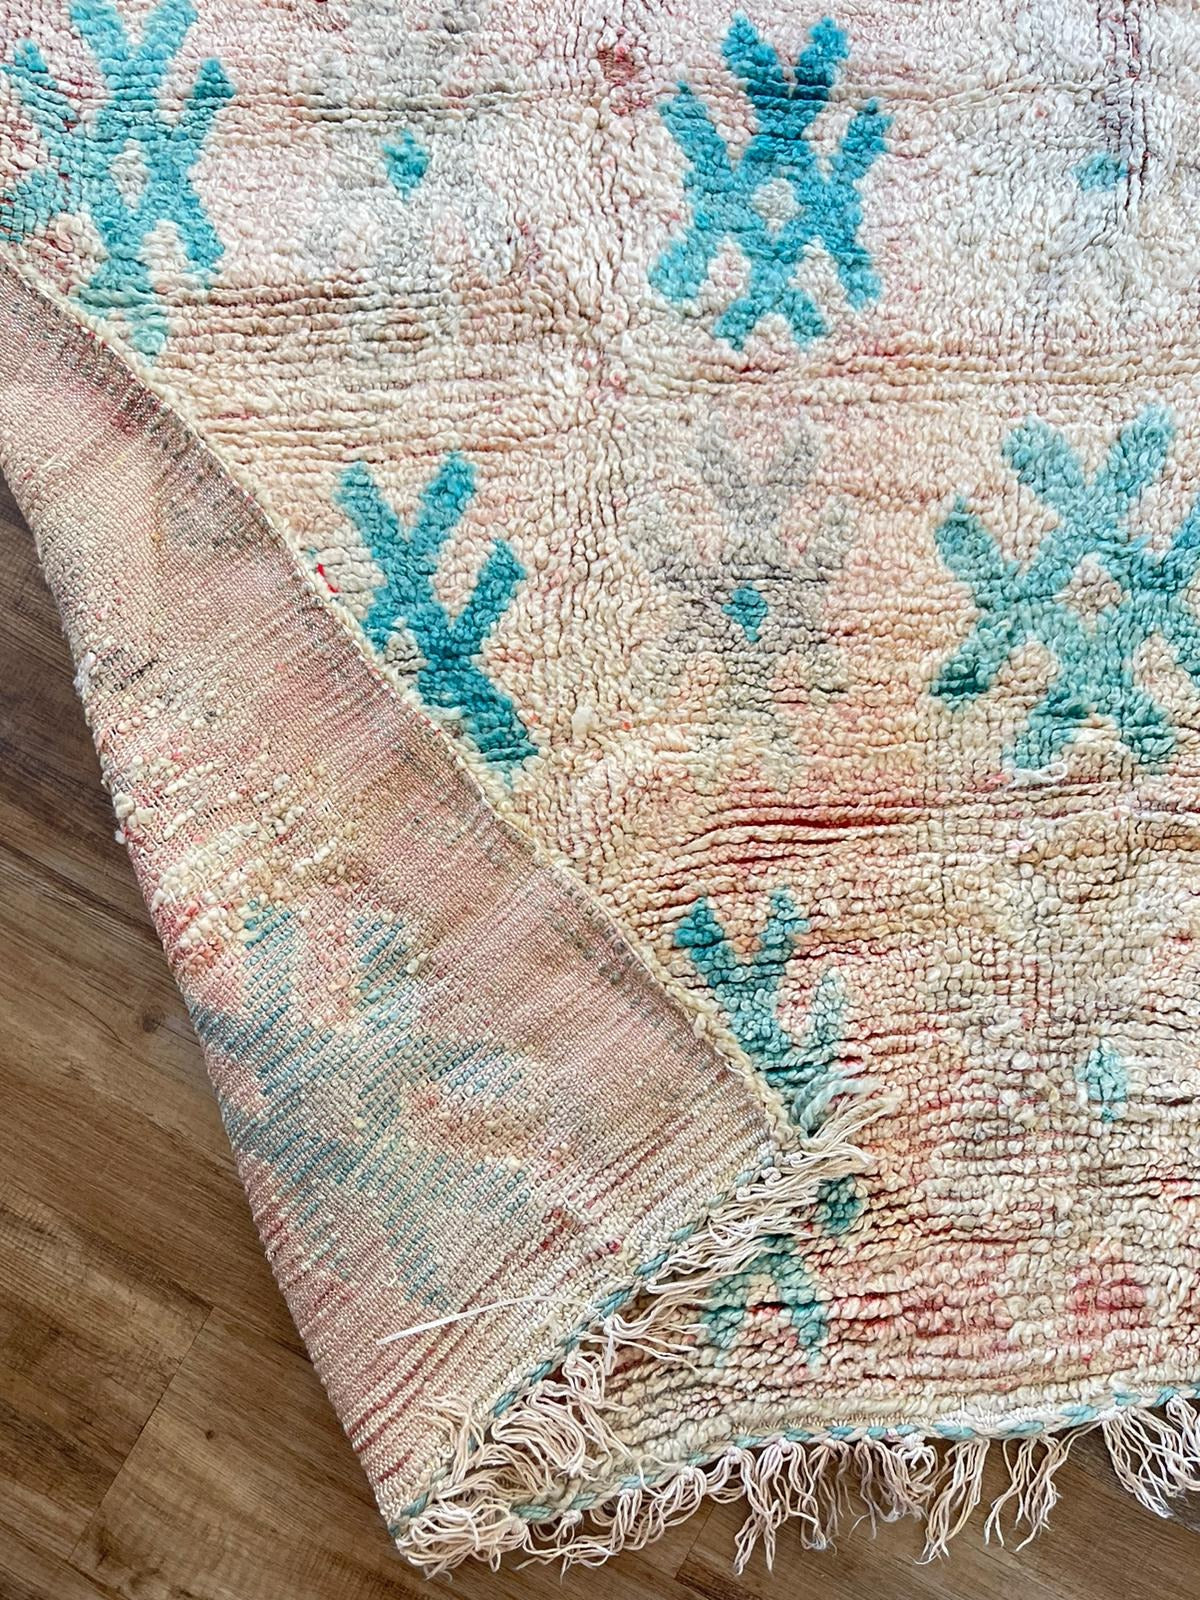 peach vintage Moroccan rug with blue symbols